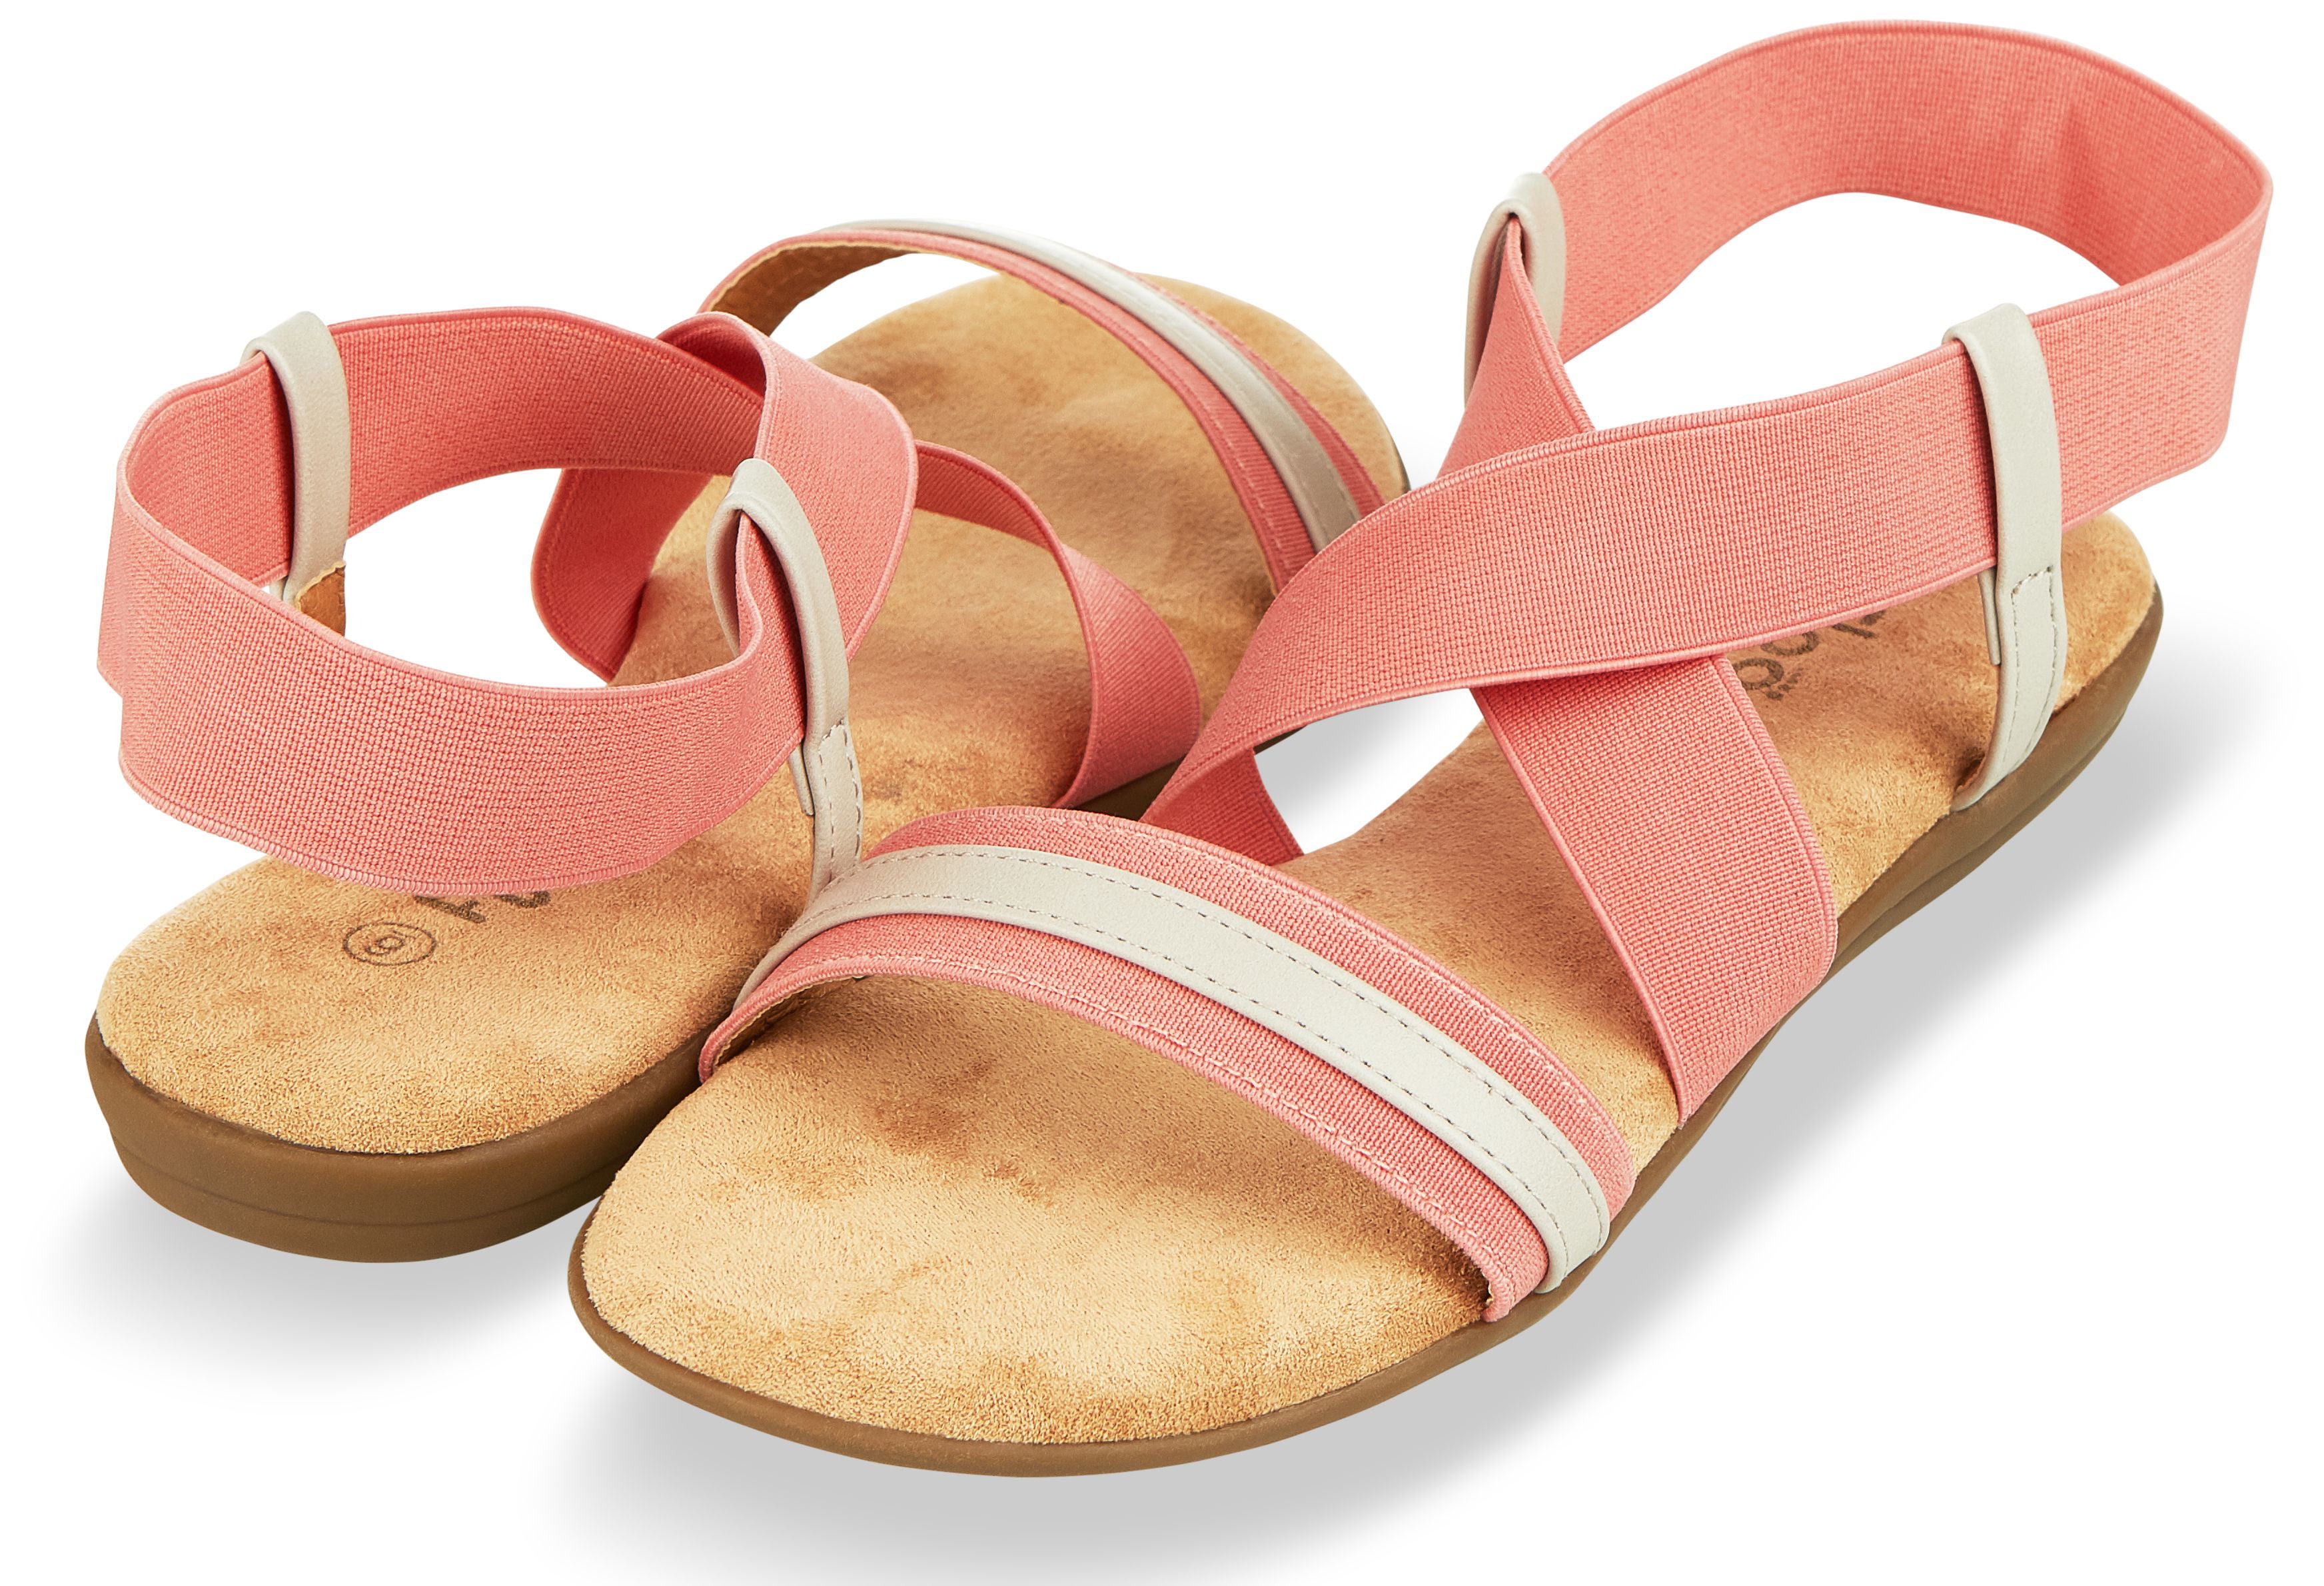 Floopi - Sandals for Women by Floopi| Open Toe, Gladiator Design Summer ...